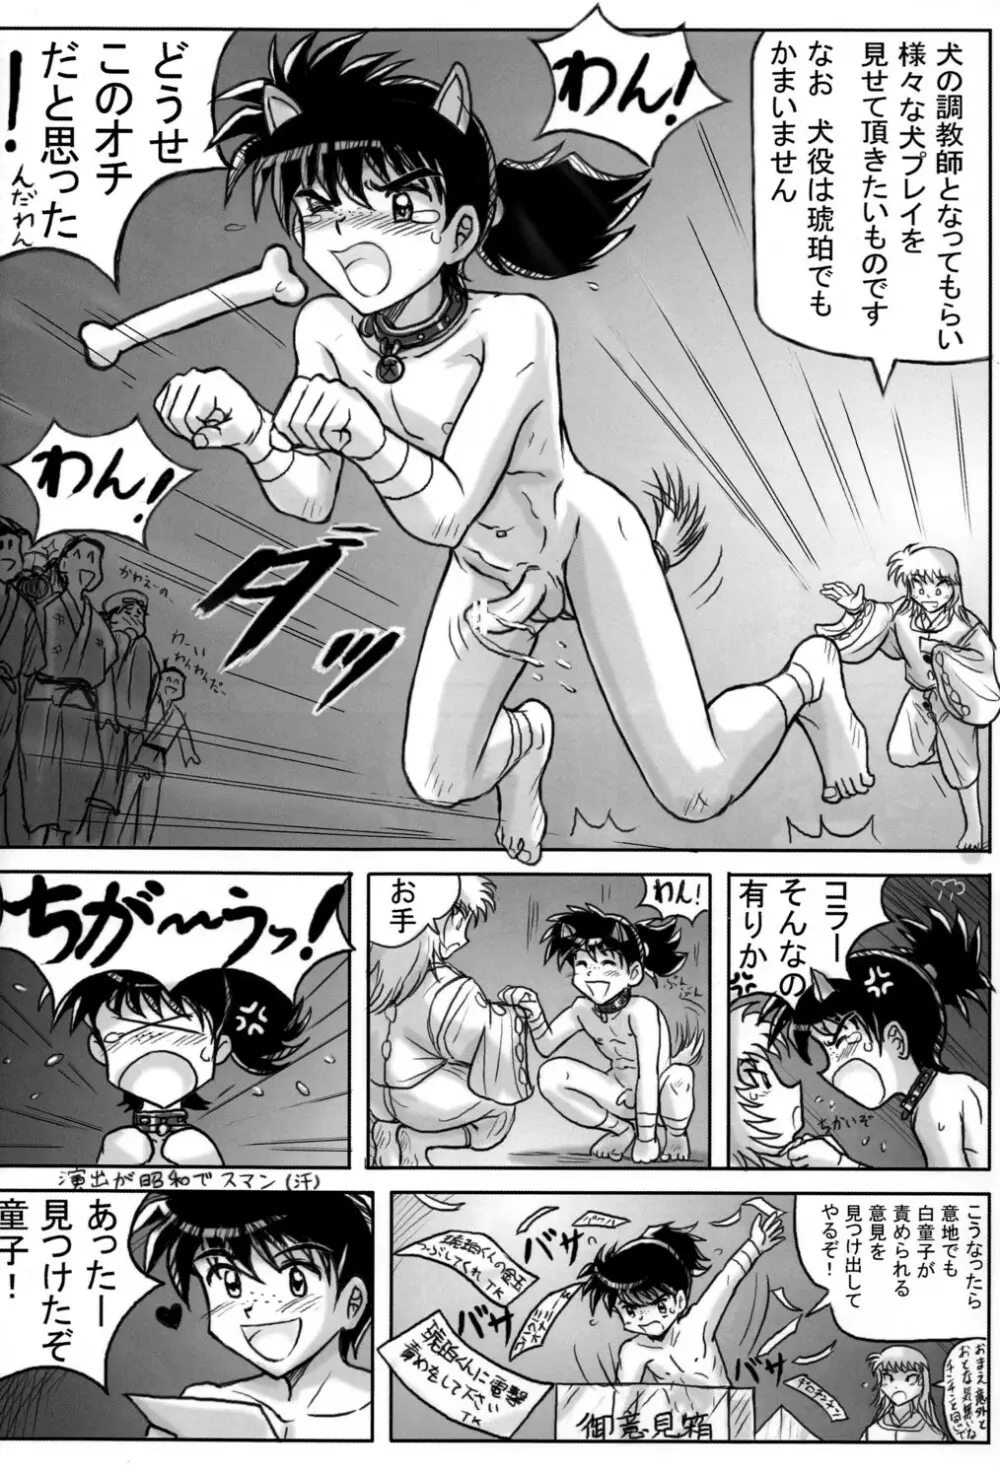 Takenokoya – Kohaku no Tsubo Manga Ban 36ページ